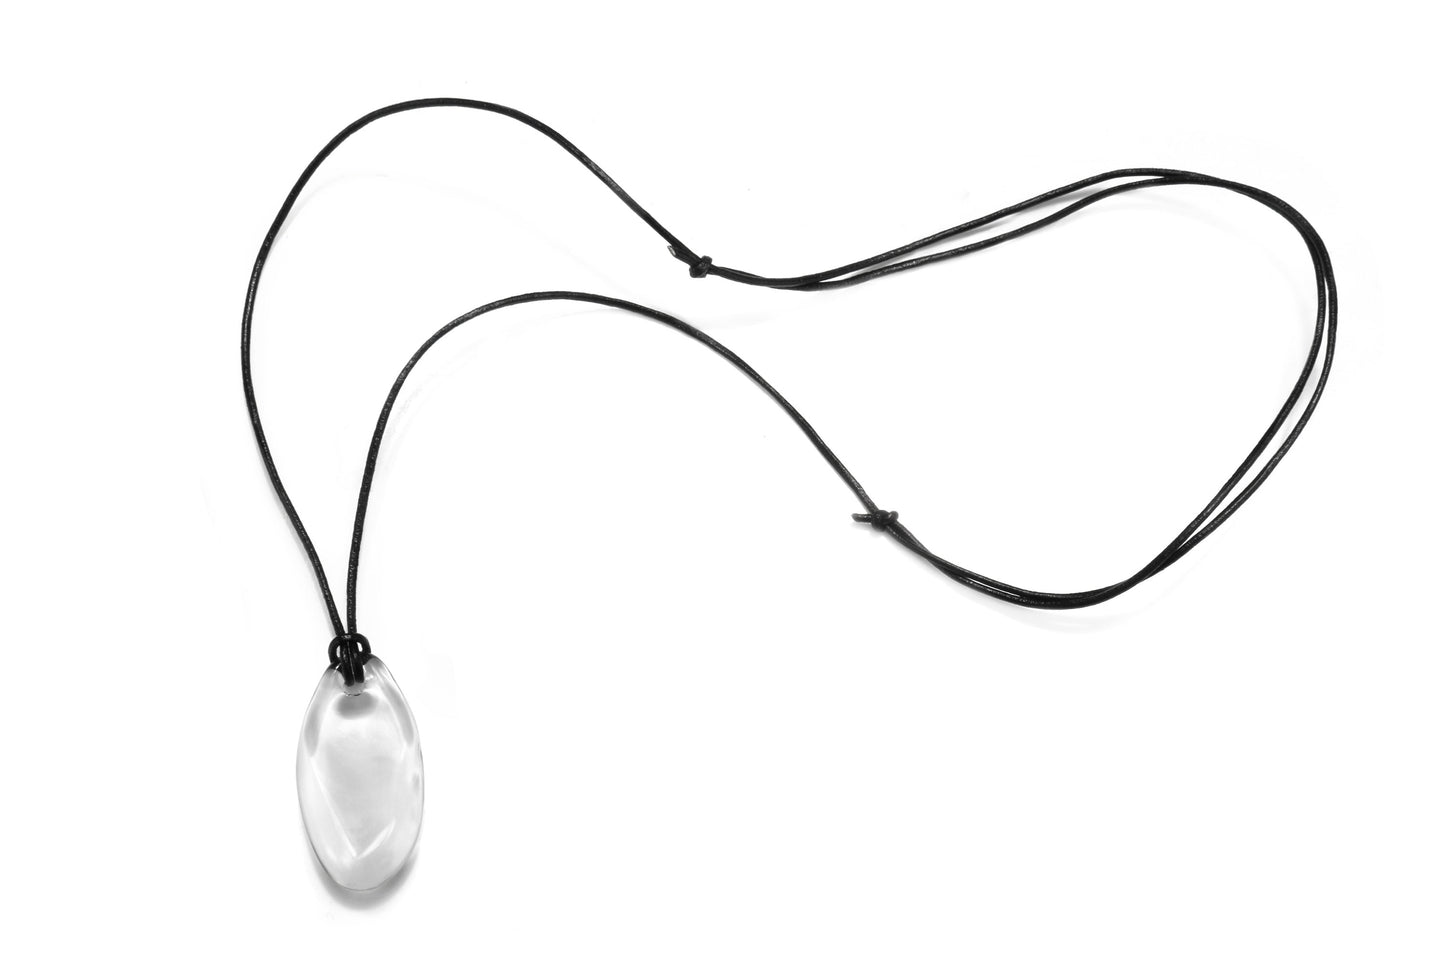 Glass Pebble Pendant Necklace